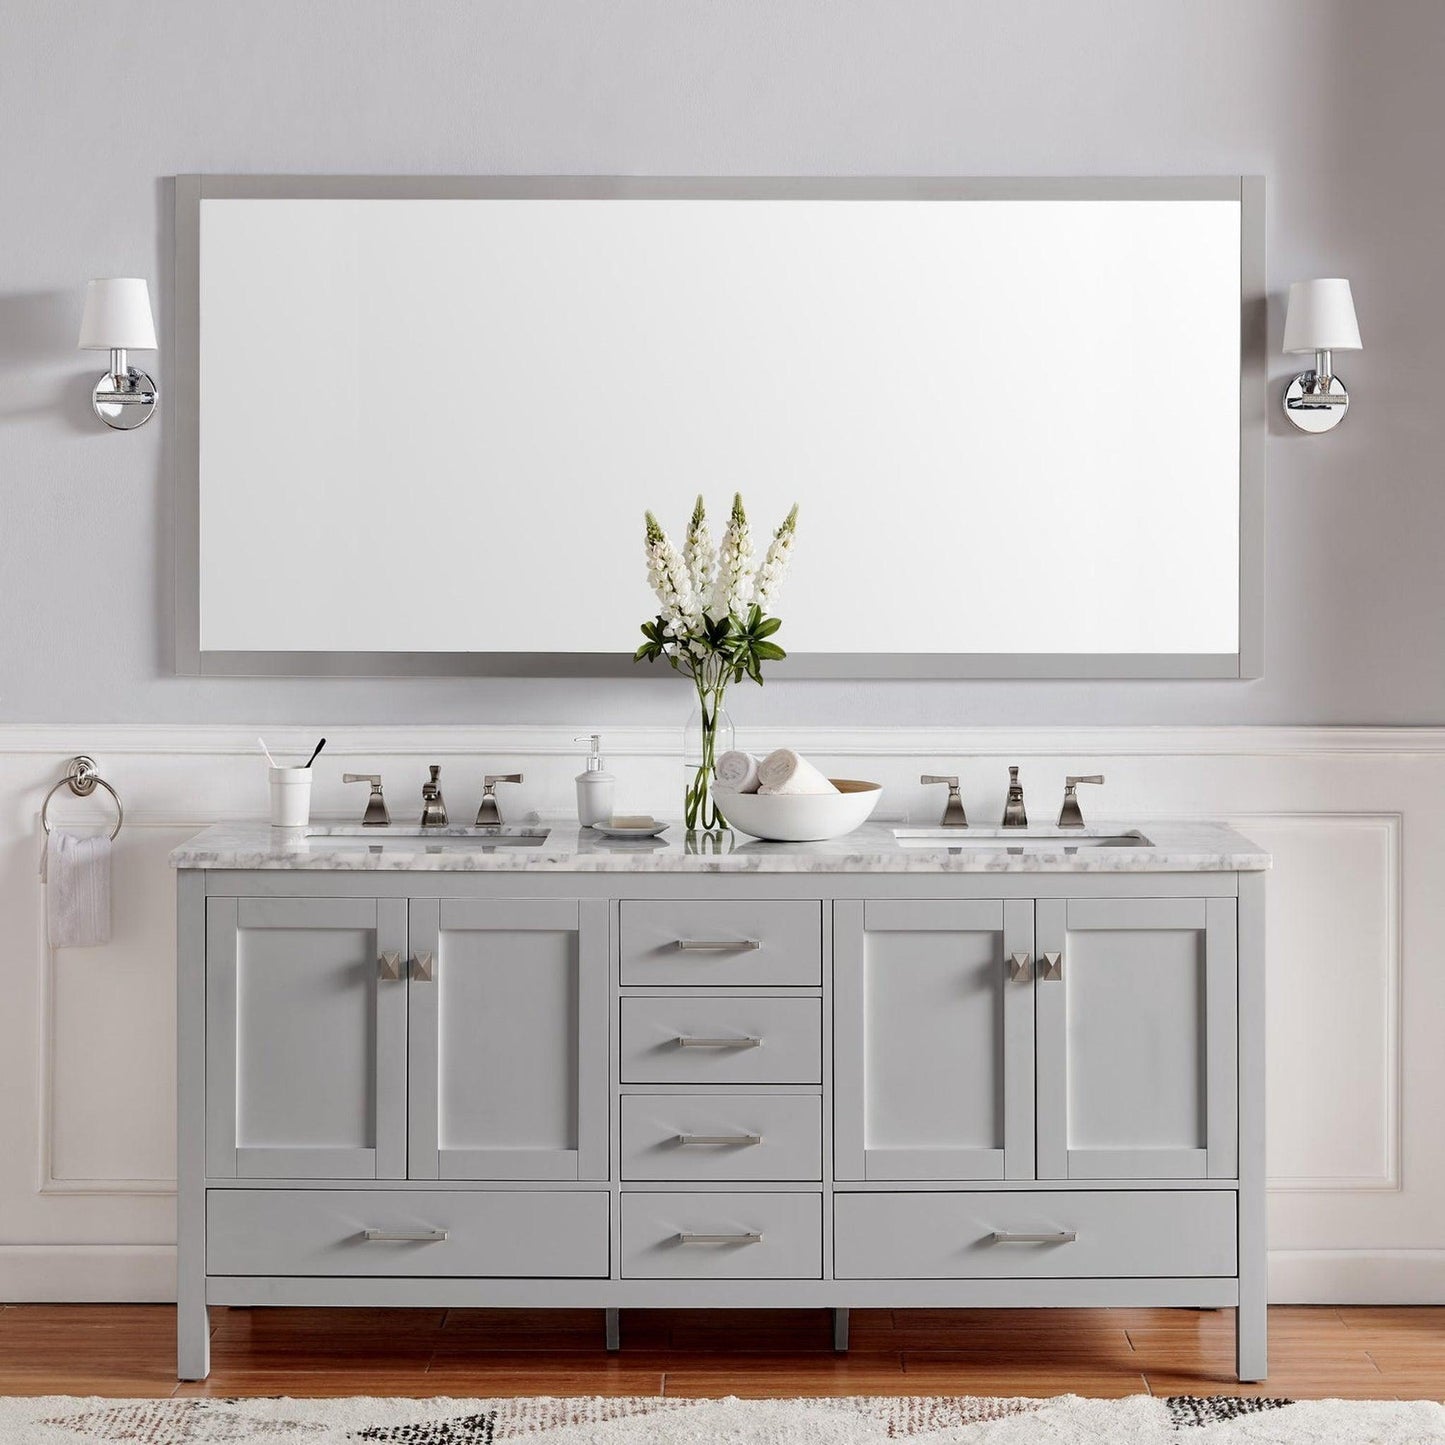 Eviva Aberdeen 78" x 34" Gray Freestanding Bathroom Vanity With Double Undermount Sink